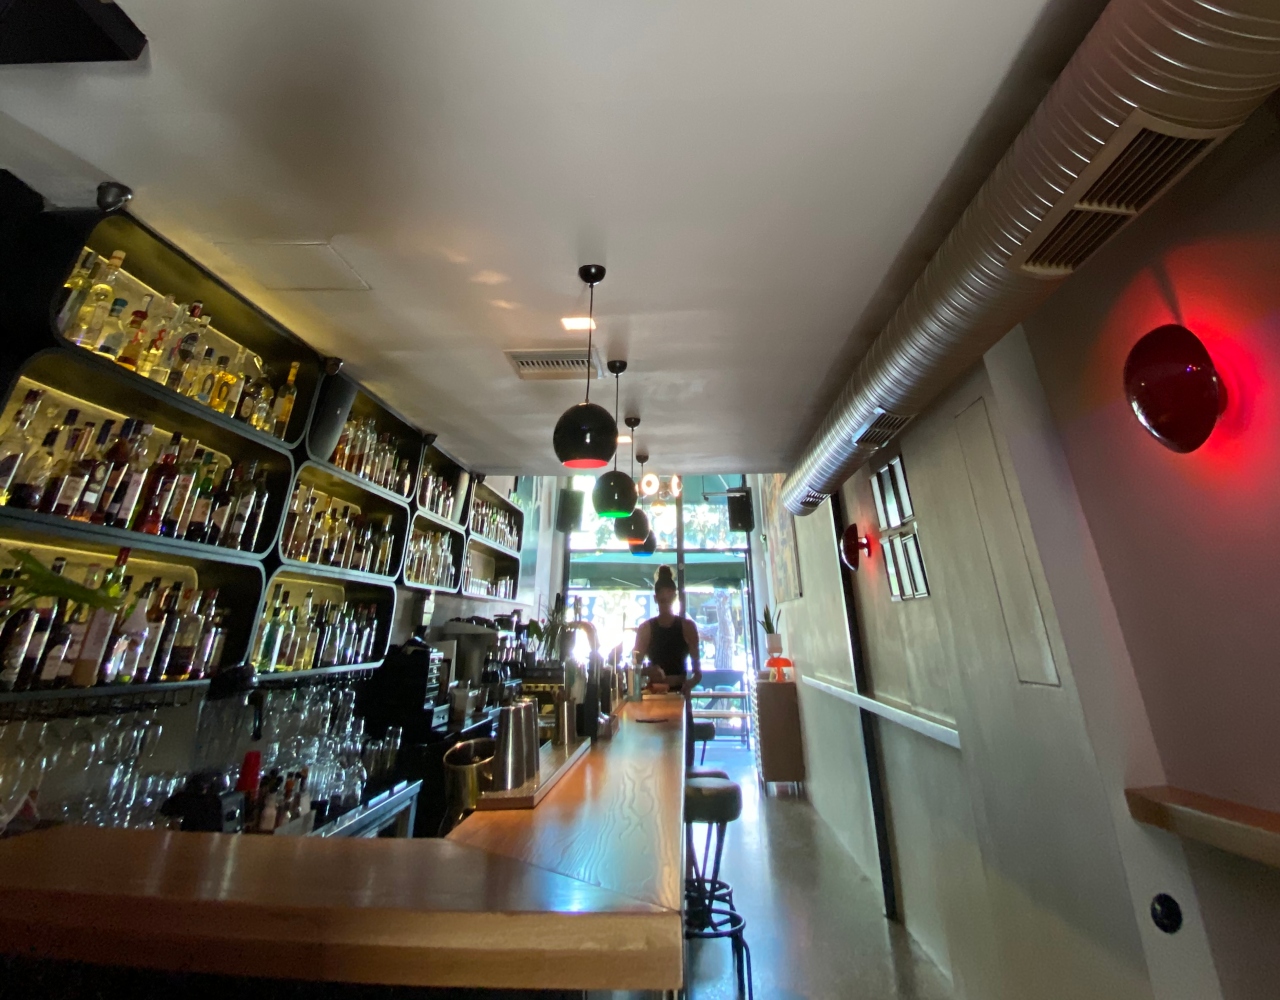 59 πράγματα που μας έχουν λείψει: Nα πιούμε ποτό στο αγαπημένο μας Mosaiko Bar